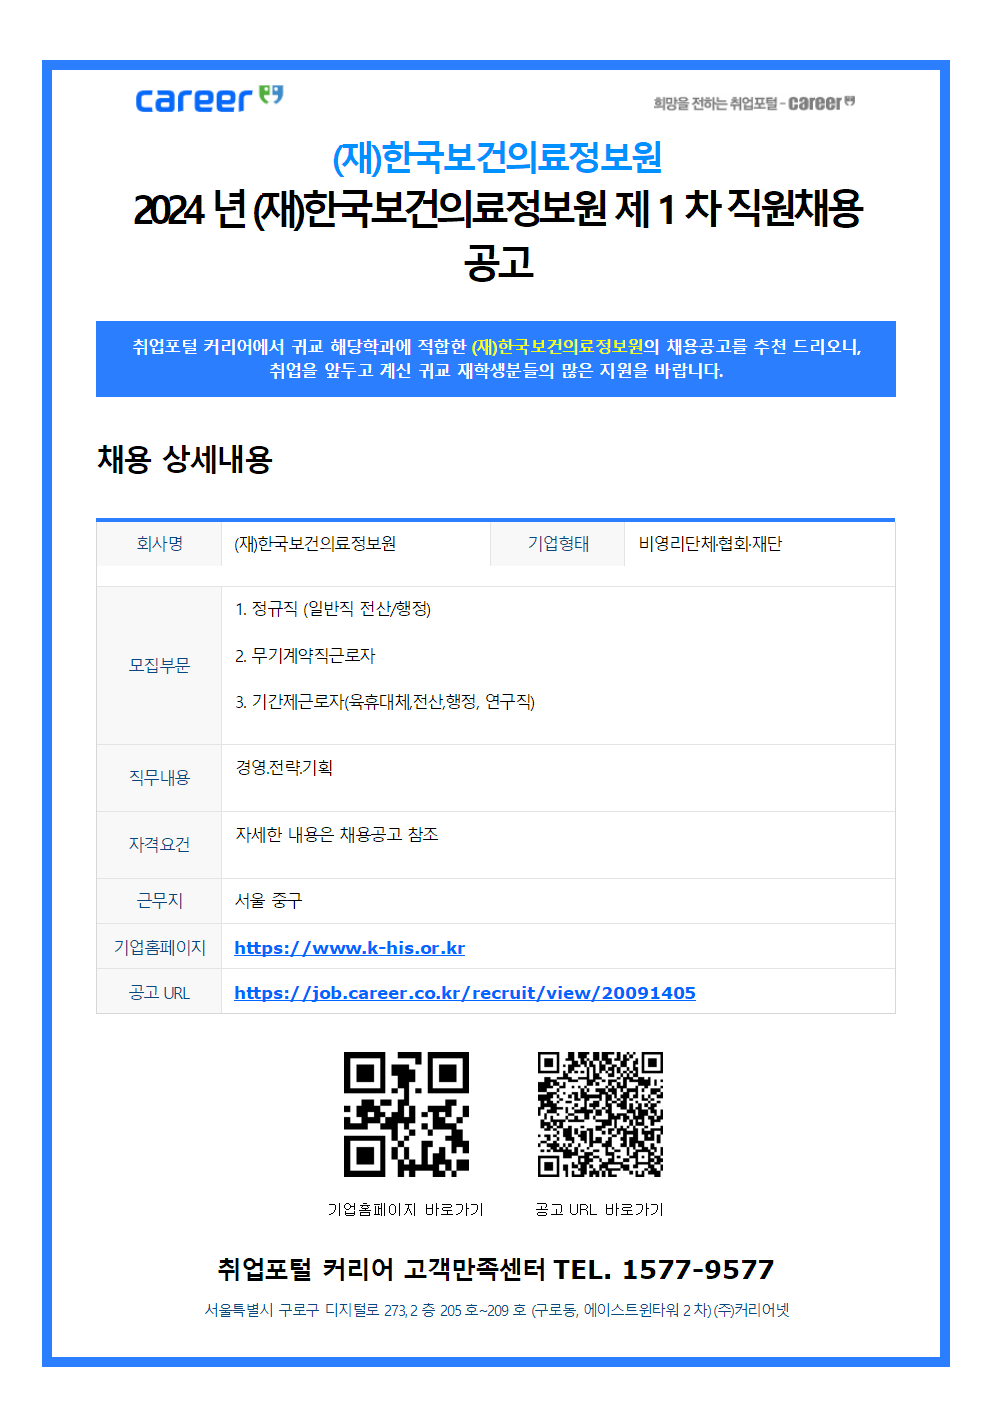 커리어_-(재)한국보건의료정보원_v.0.1001.png